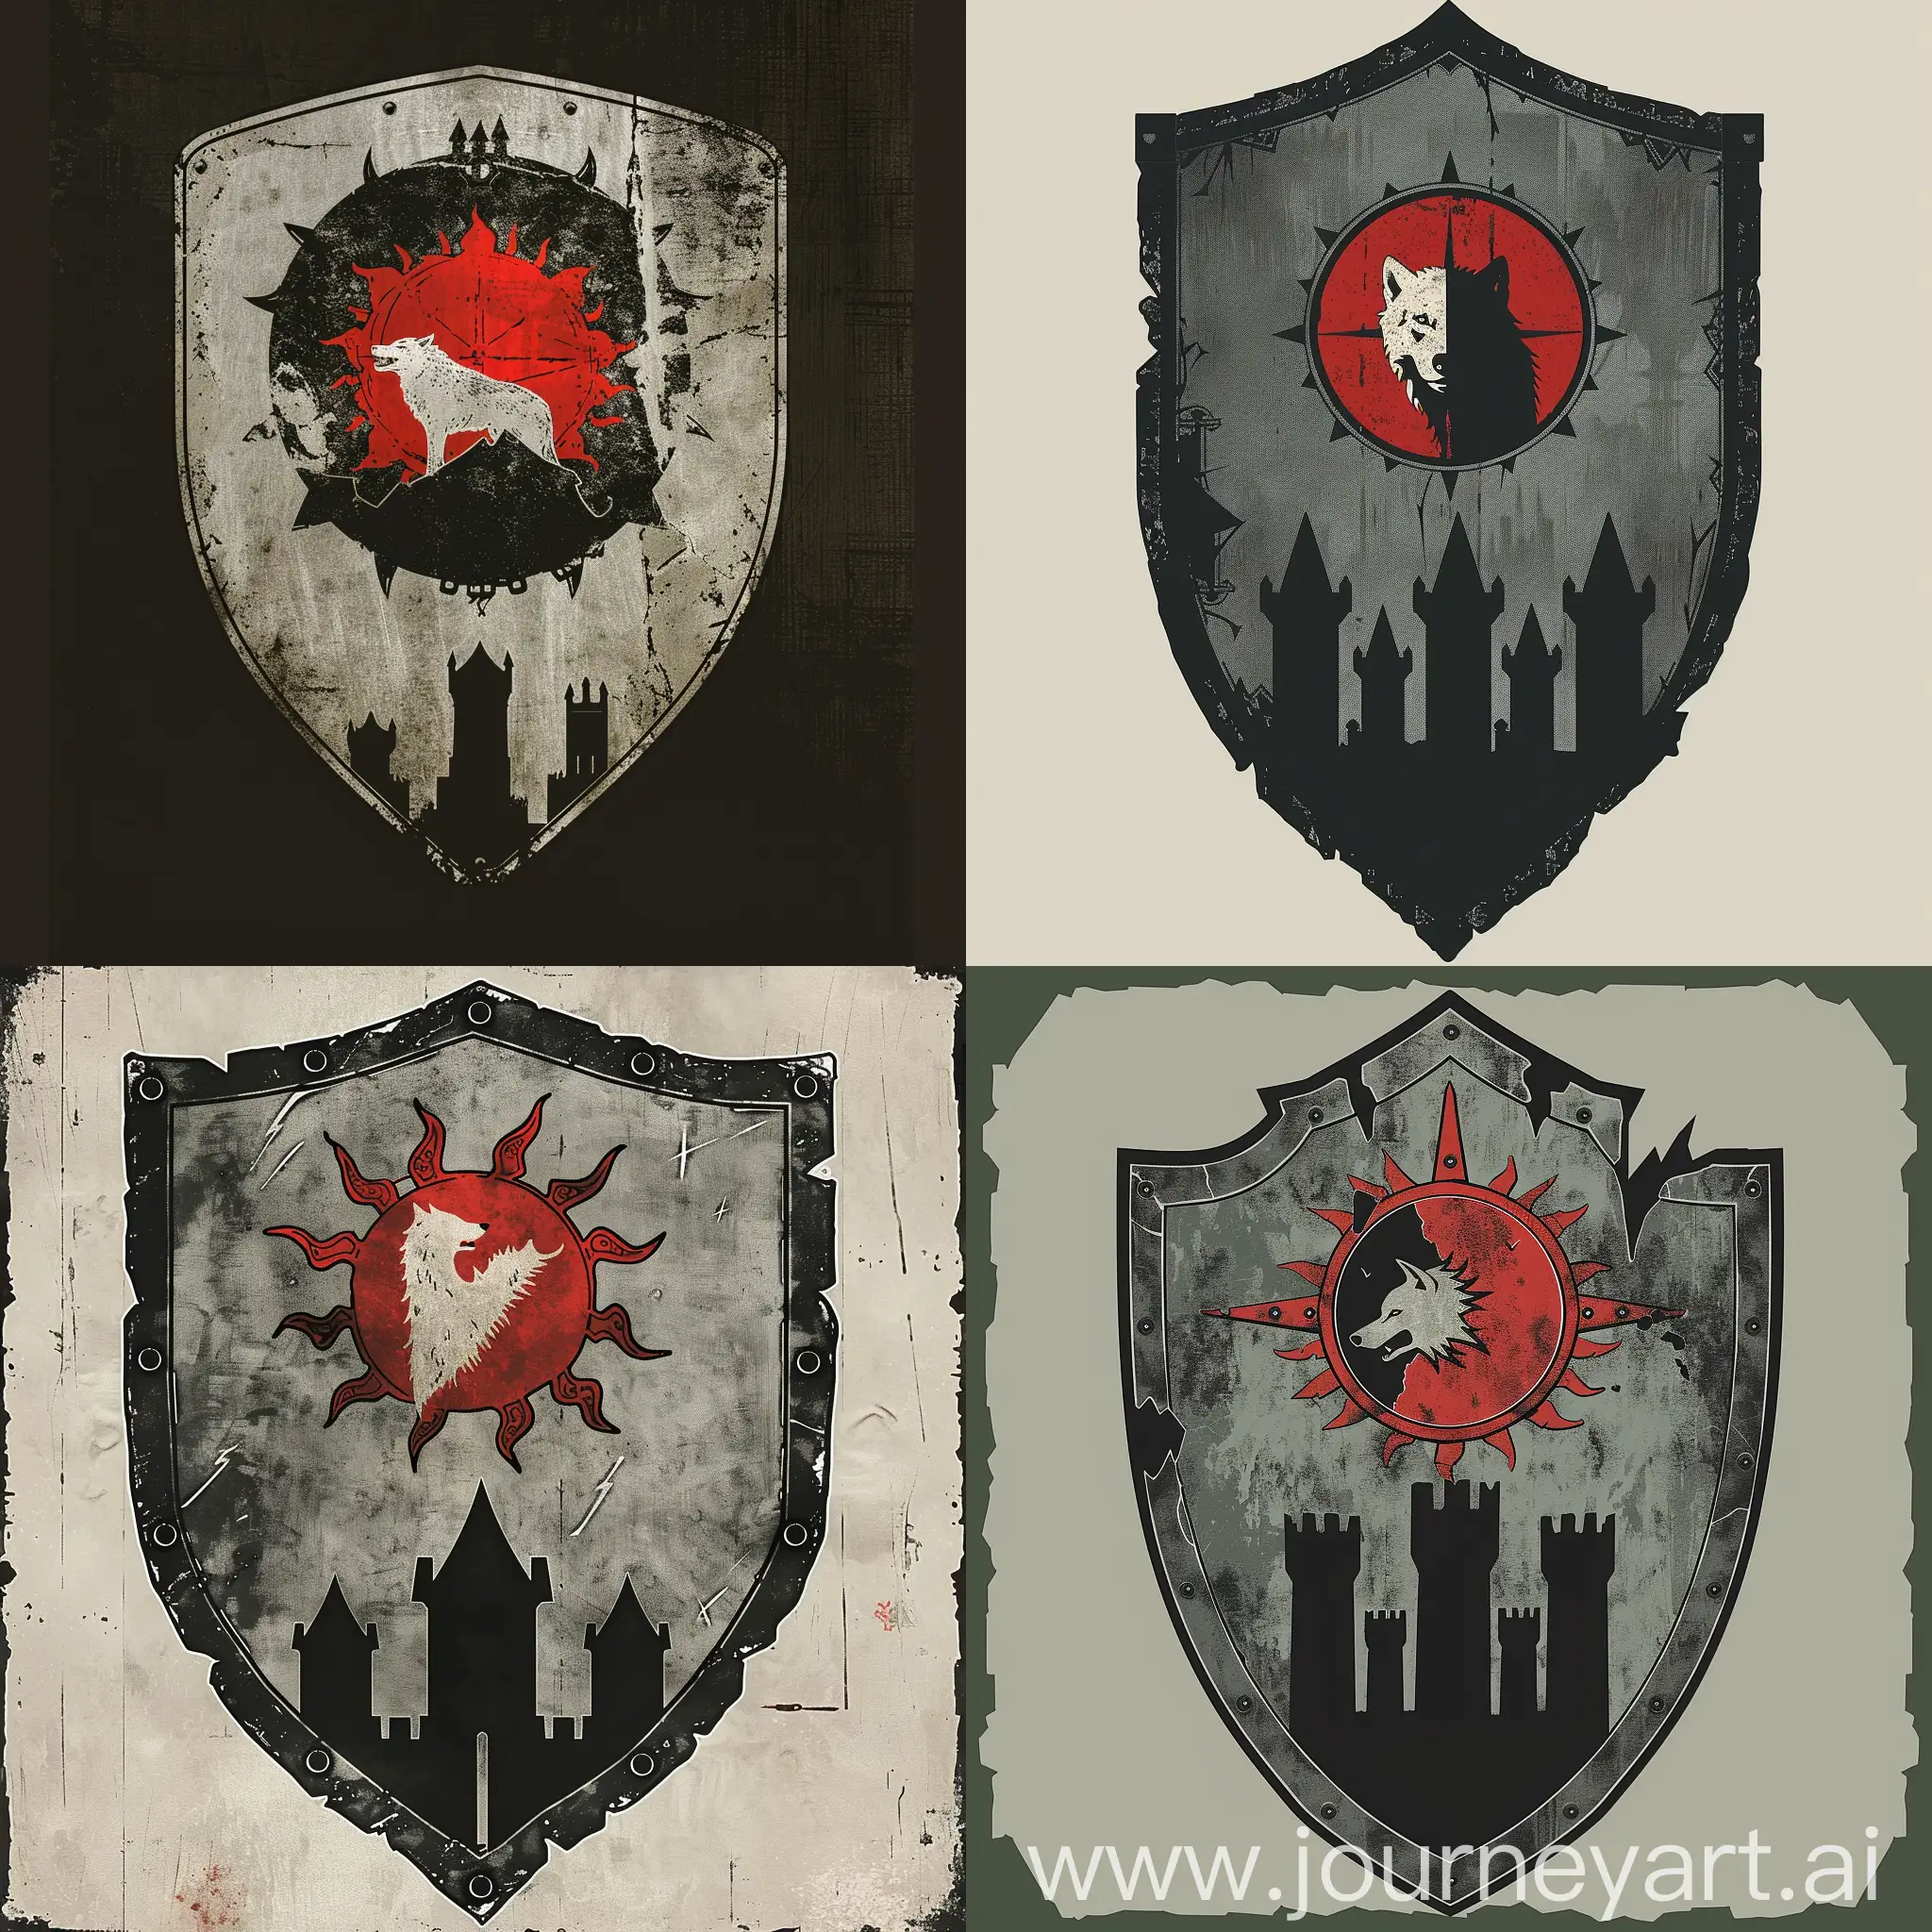 герб: На сером щите с черной окантовкой расположено красное солнце, внутри красного солнца белый волк, а внизу под солнцем три черных башни.